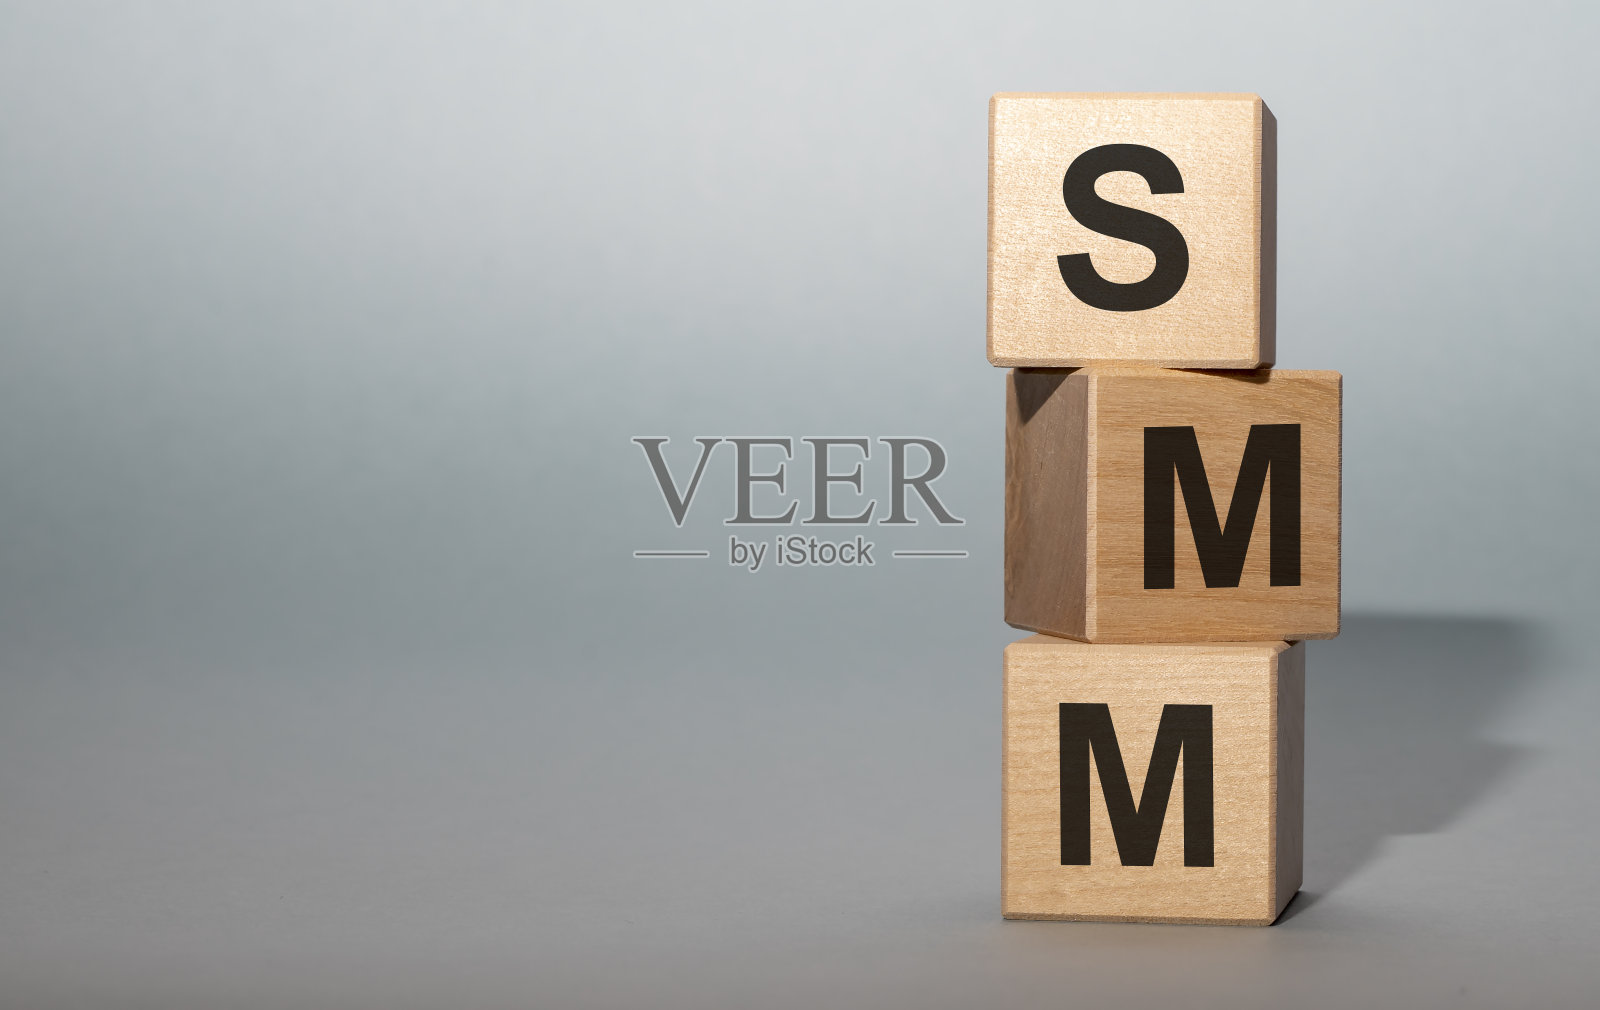 SMM -社会媒体营销-字母在木立方体上灰蓝色的背景照片摄影图片